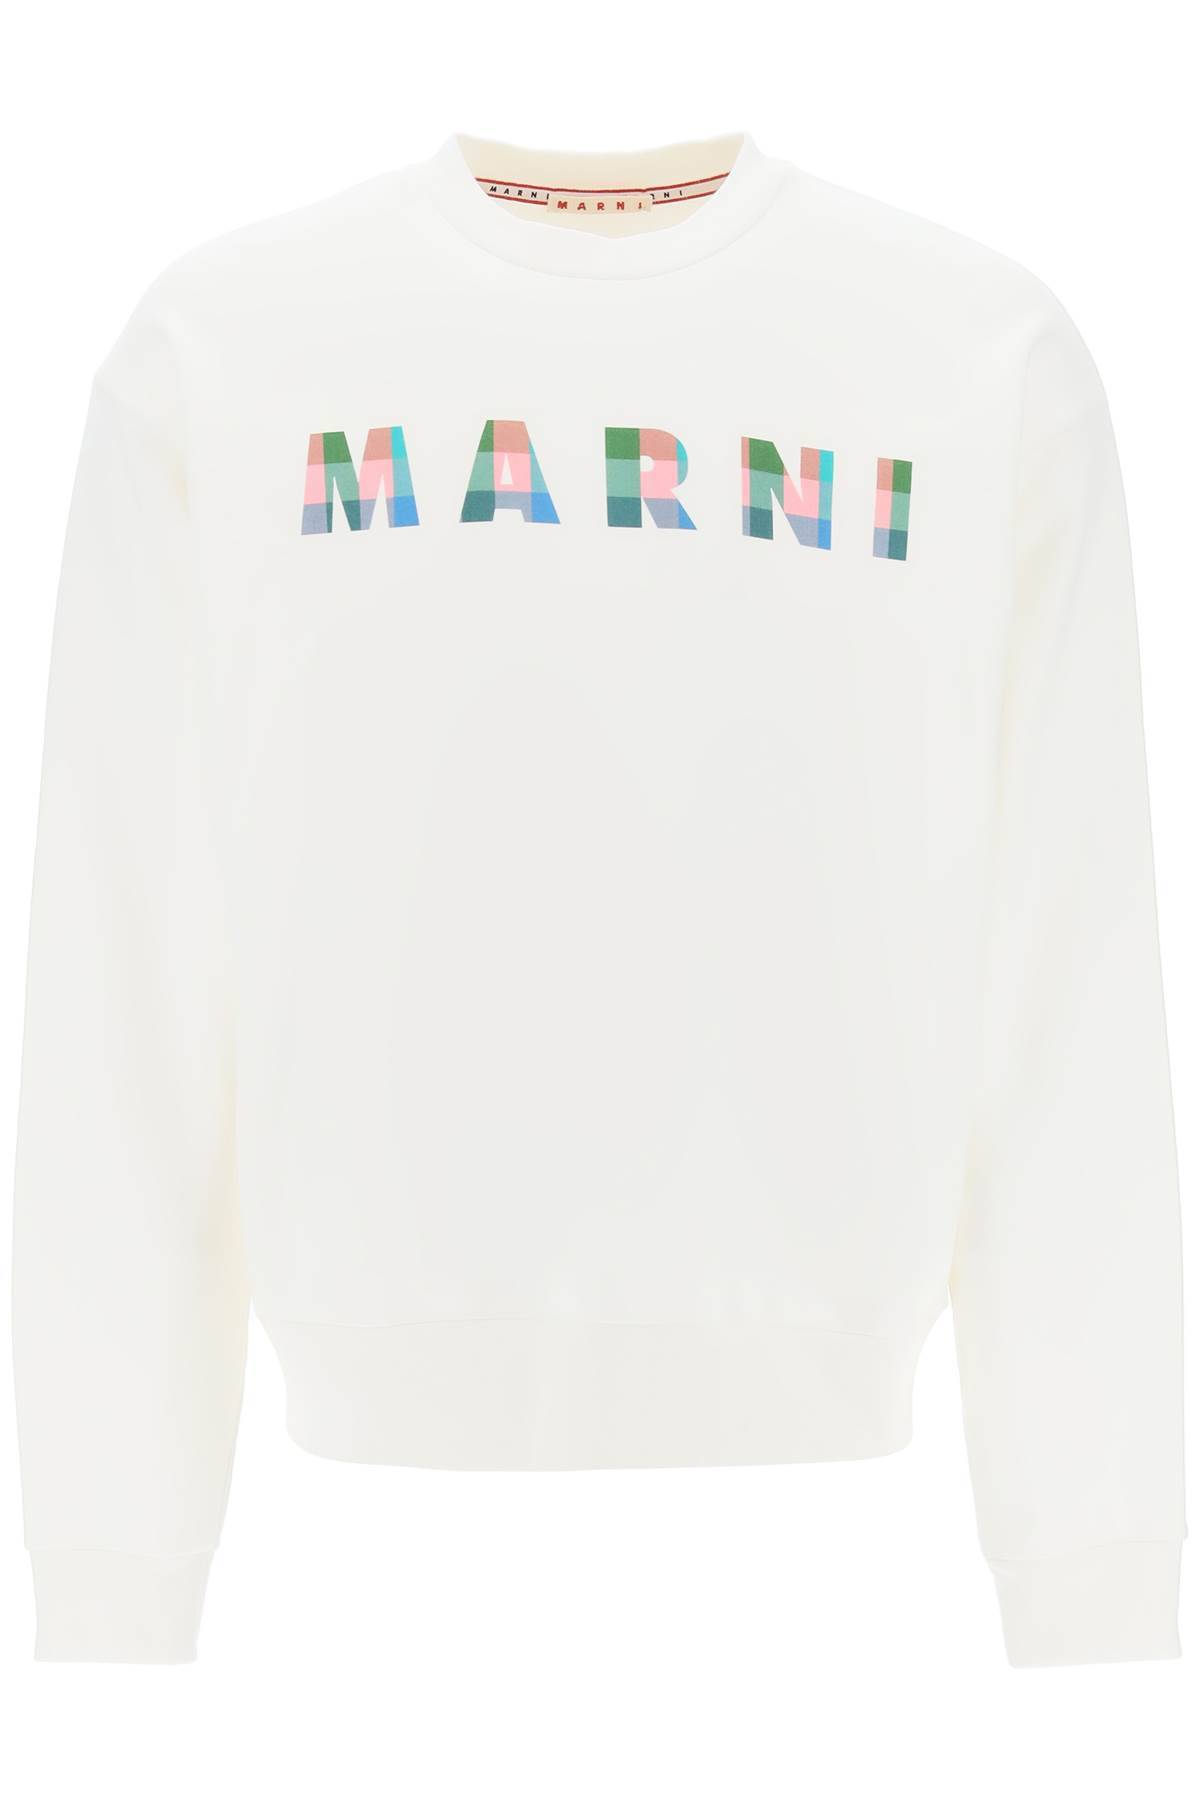 Marni MARNI sweatshirt with plaid logo